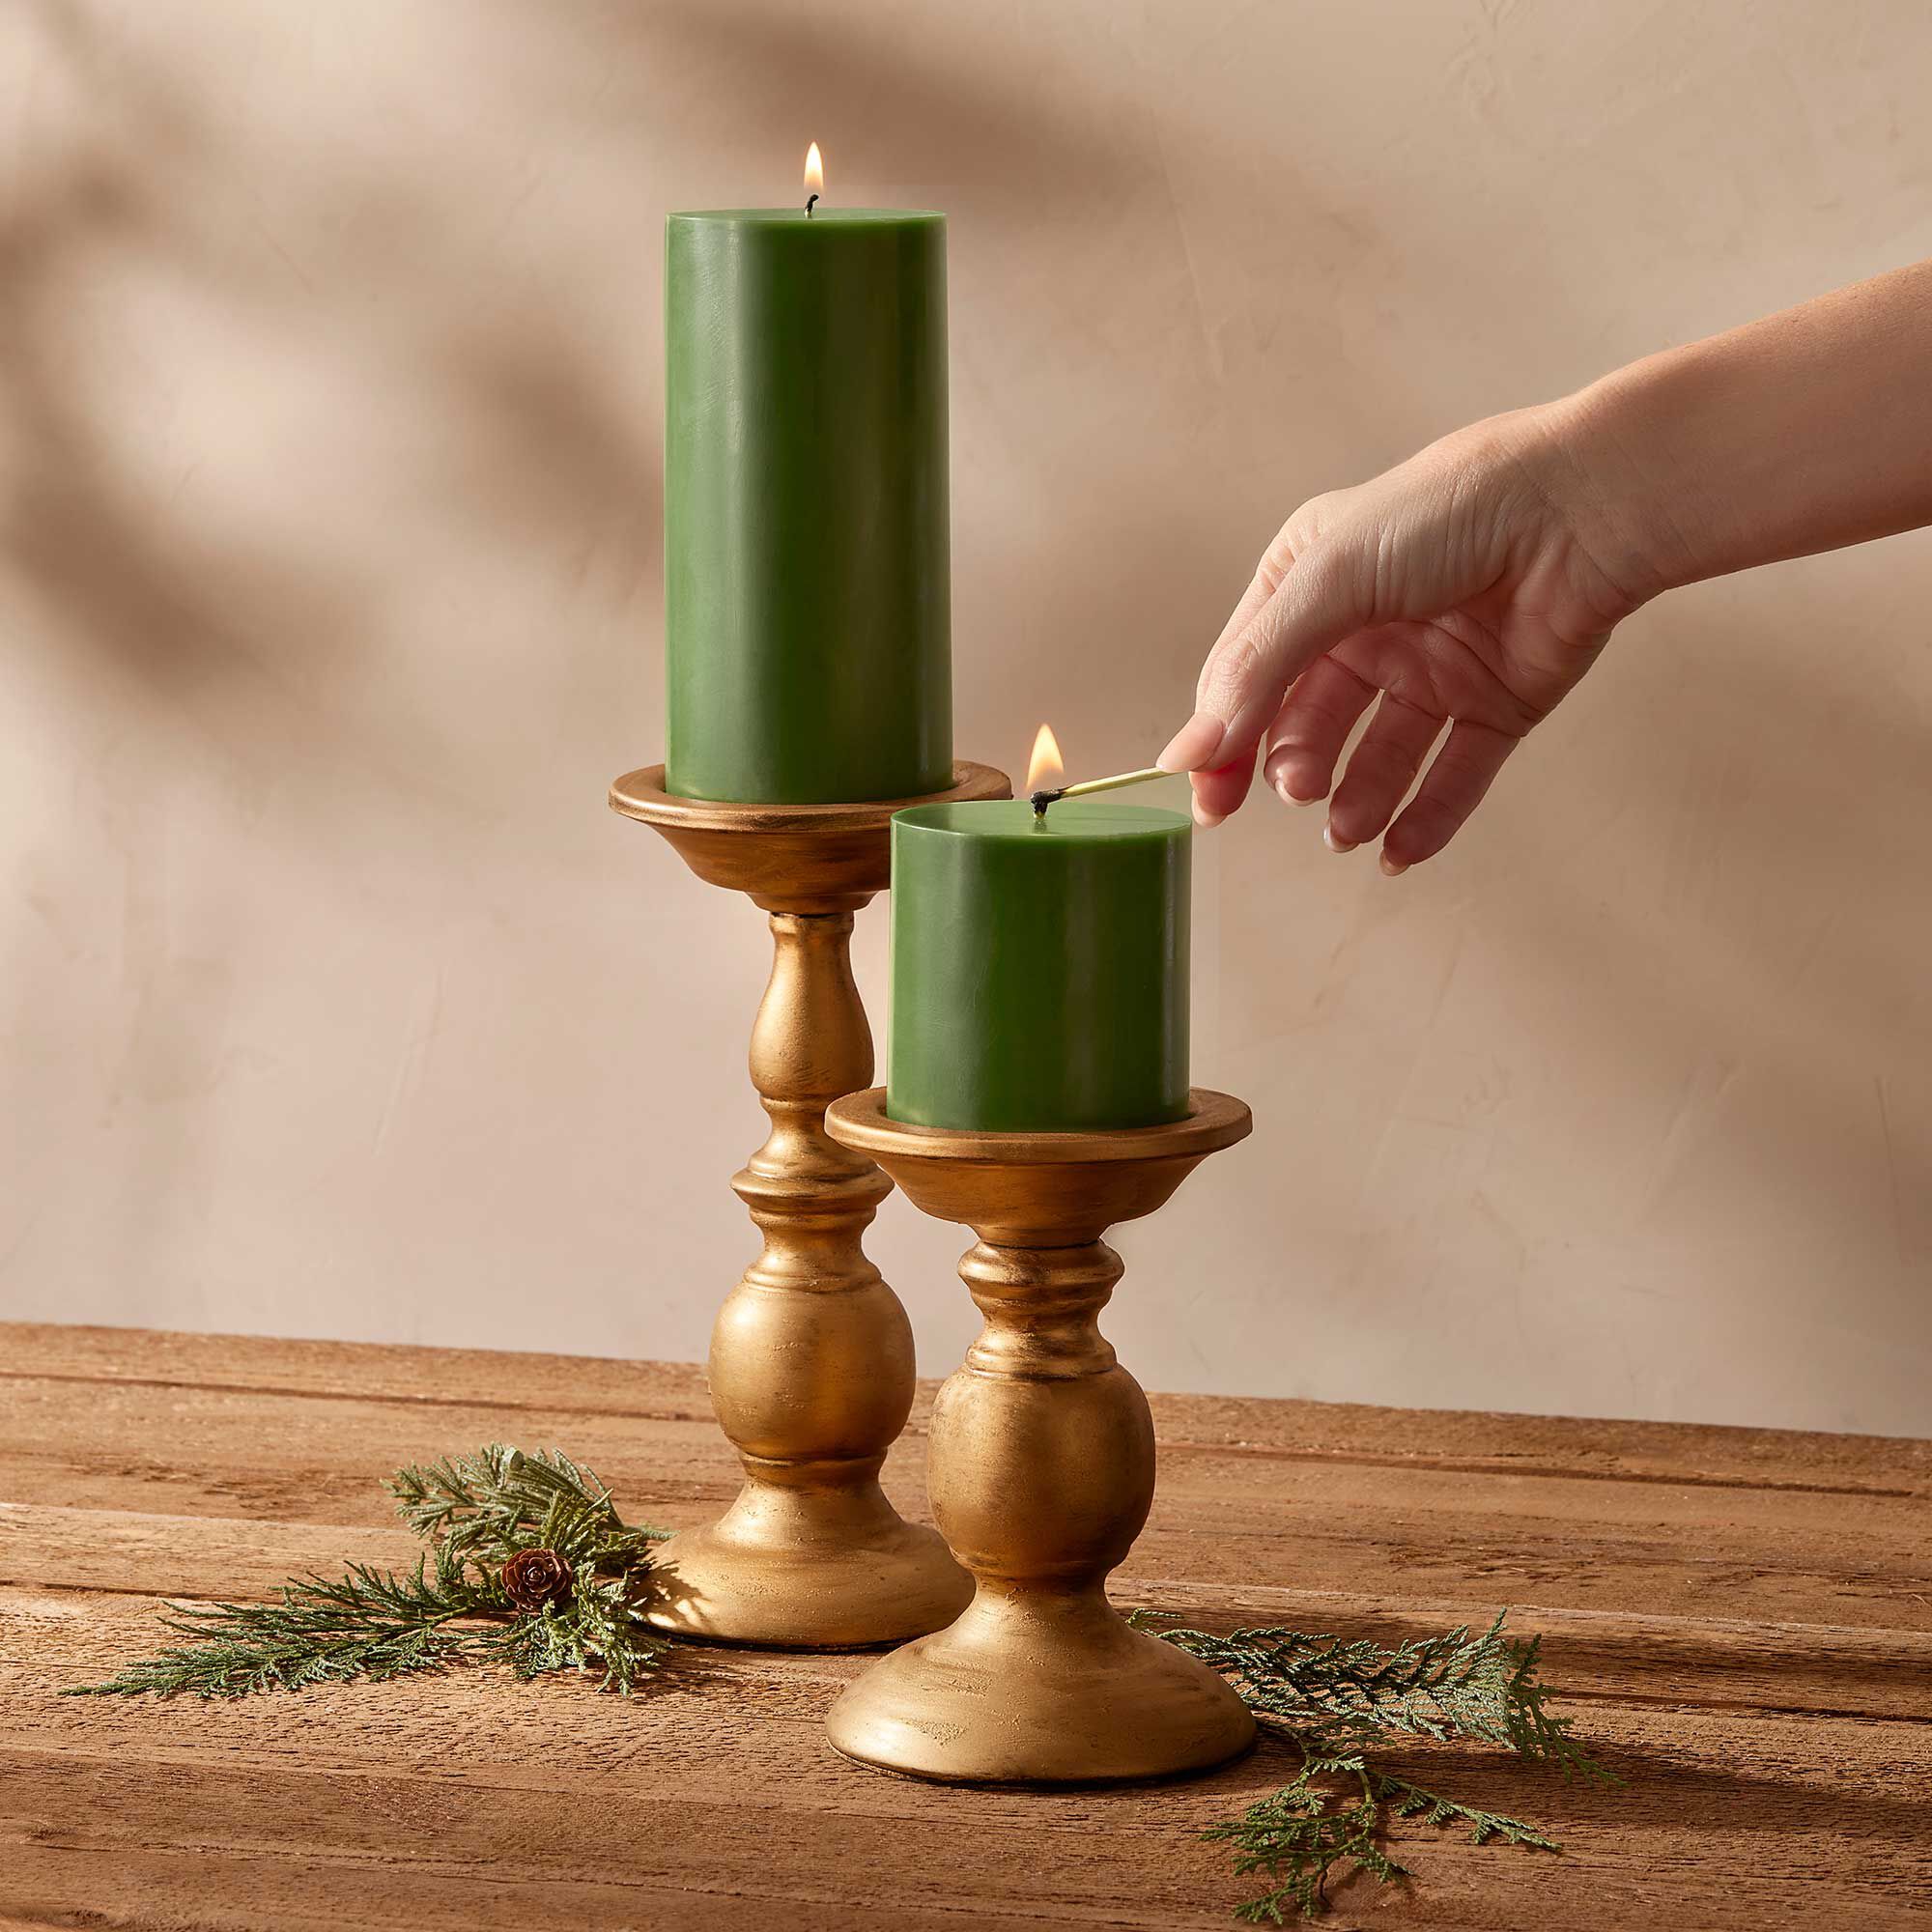 Thymes Frasier Fir Pillar Candle – 3" x 6"